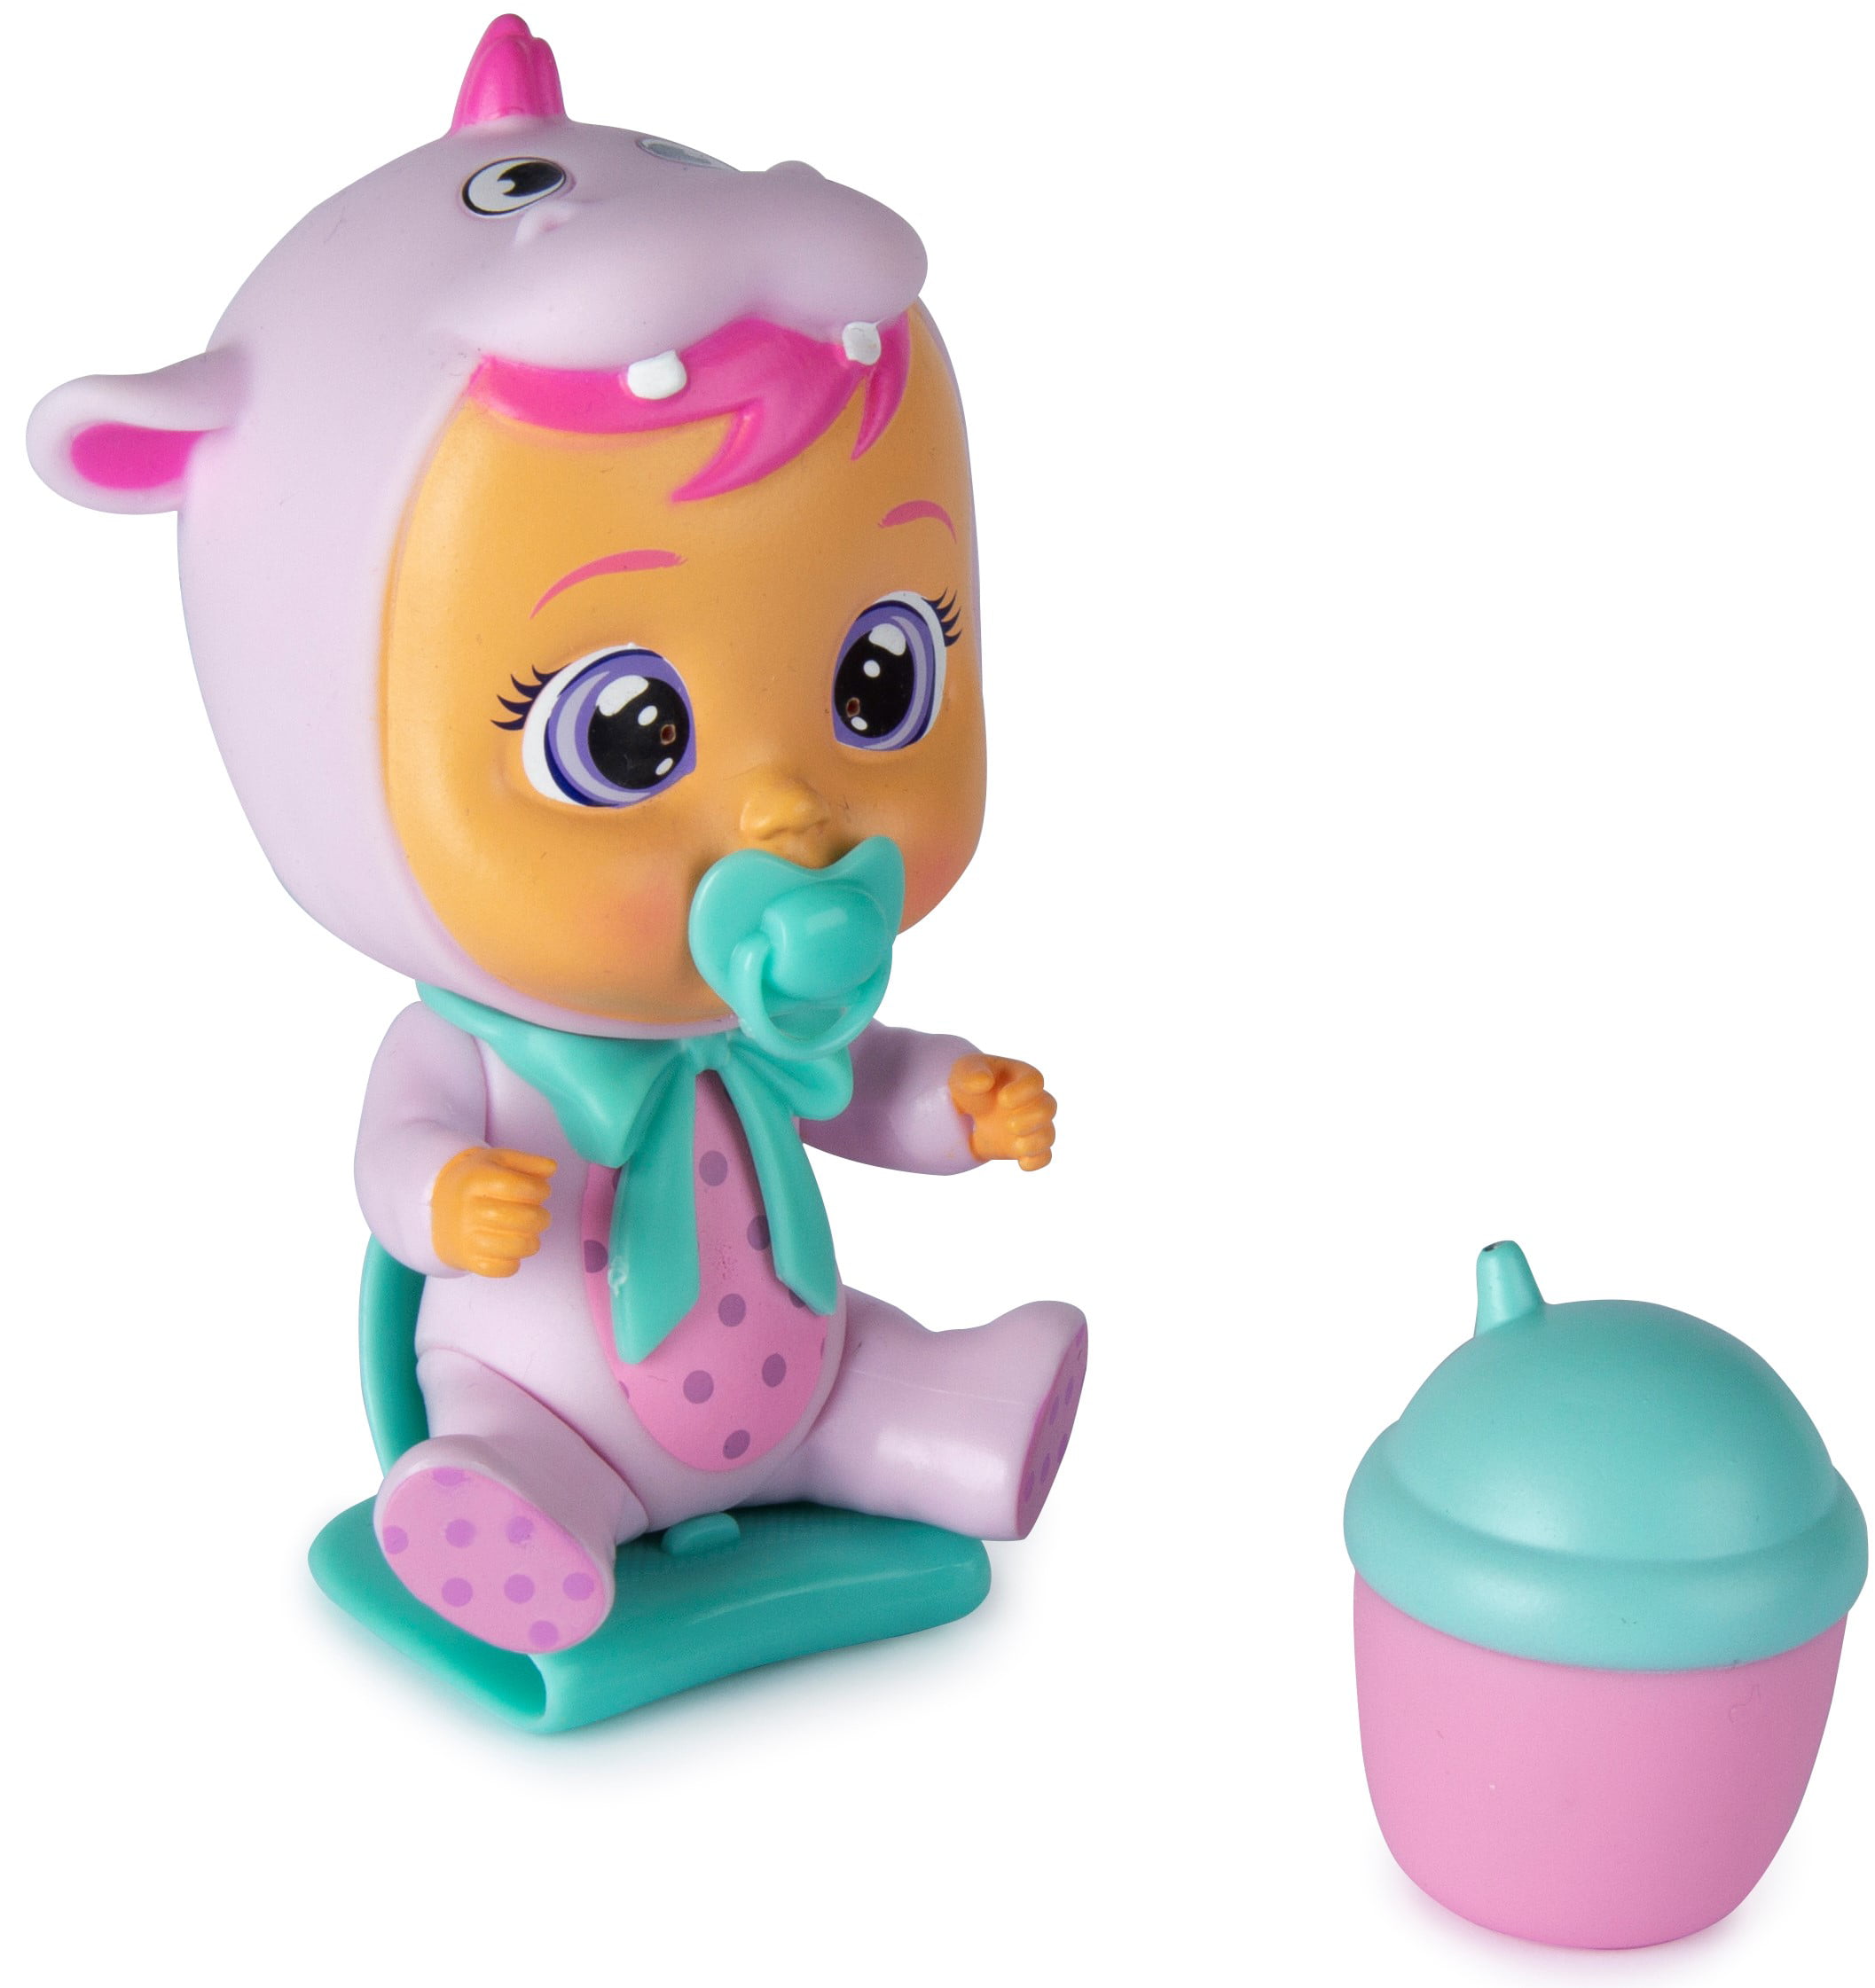 NEU Cry Babies Magic Tears von IMC Toys weint mit echtem Wasser Magic Bottle no1 